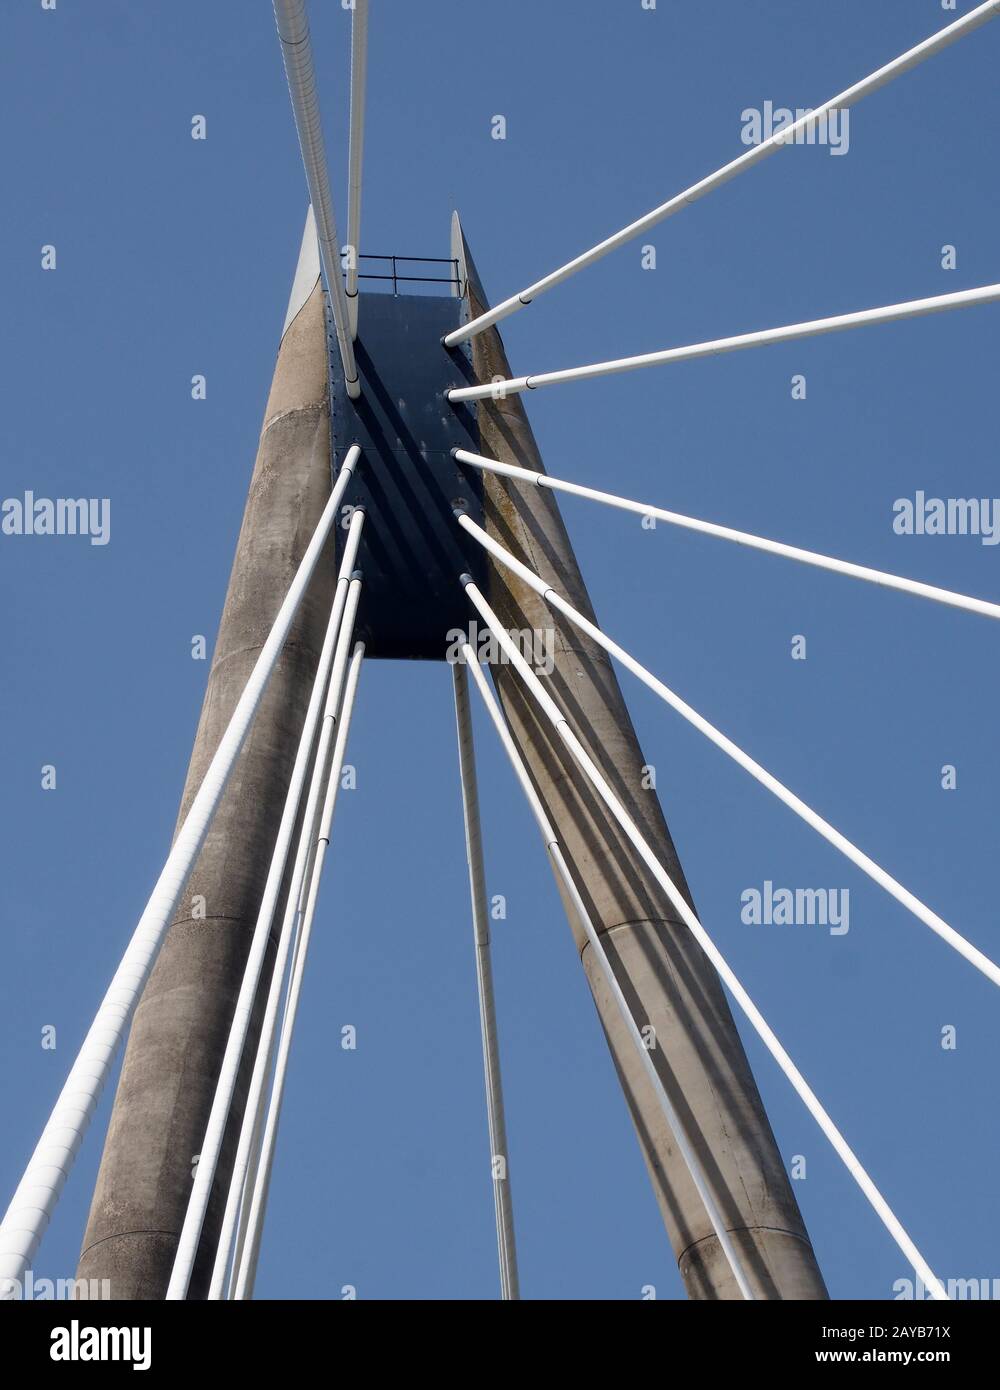 Blick auf den Turm und die Kabel auf der Hängebrücke auf dem Meeresweg in southport merseyside gegen einen blauen Sommerhimmel Stockfoto